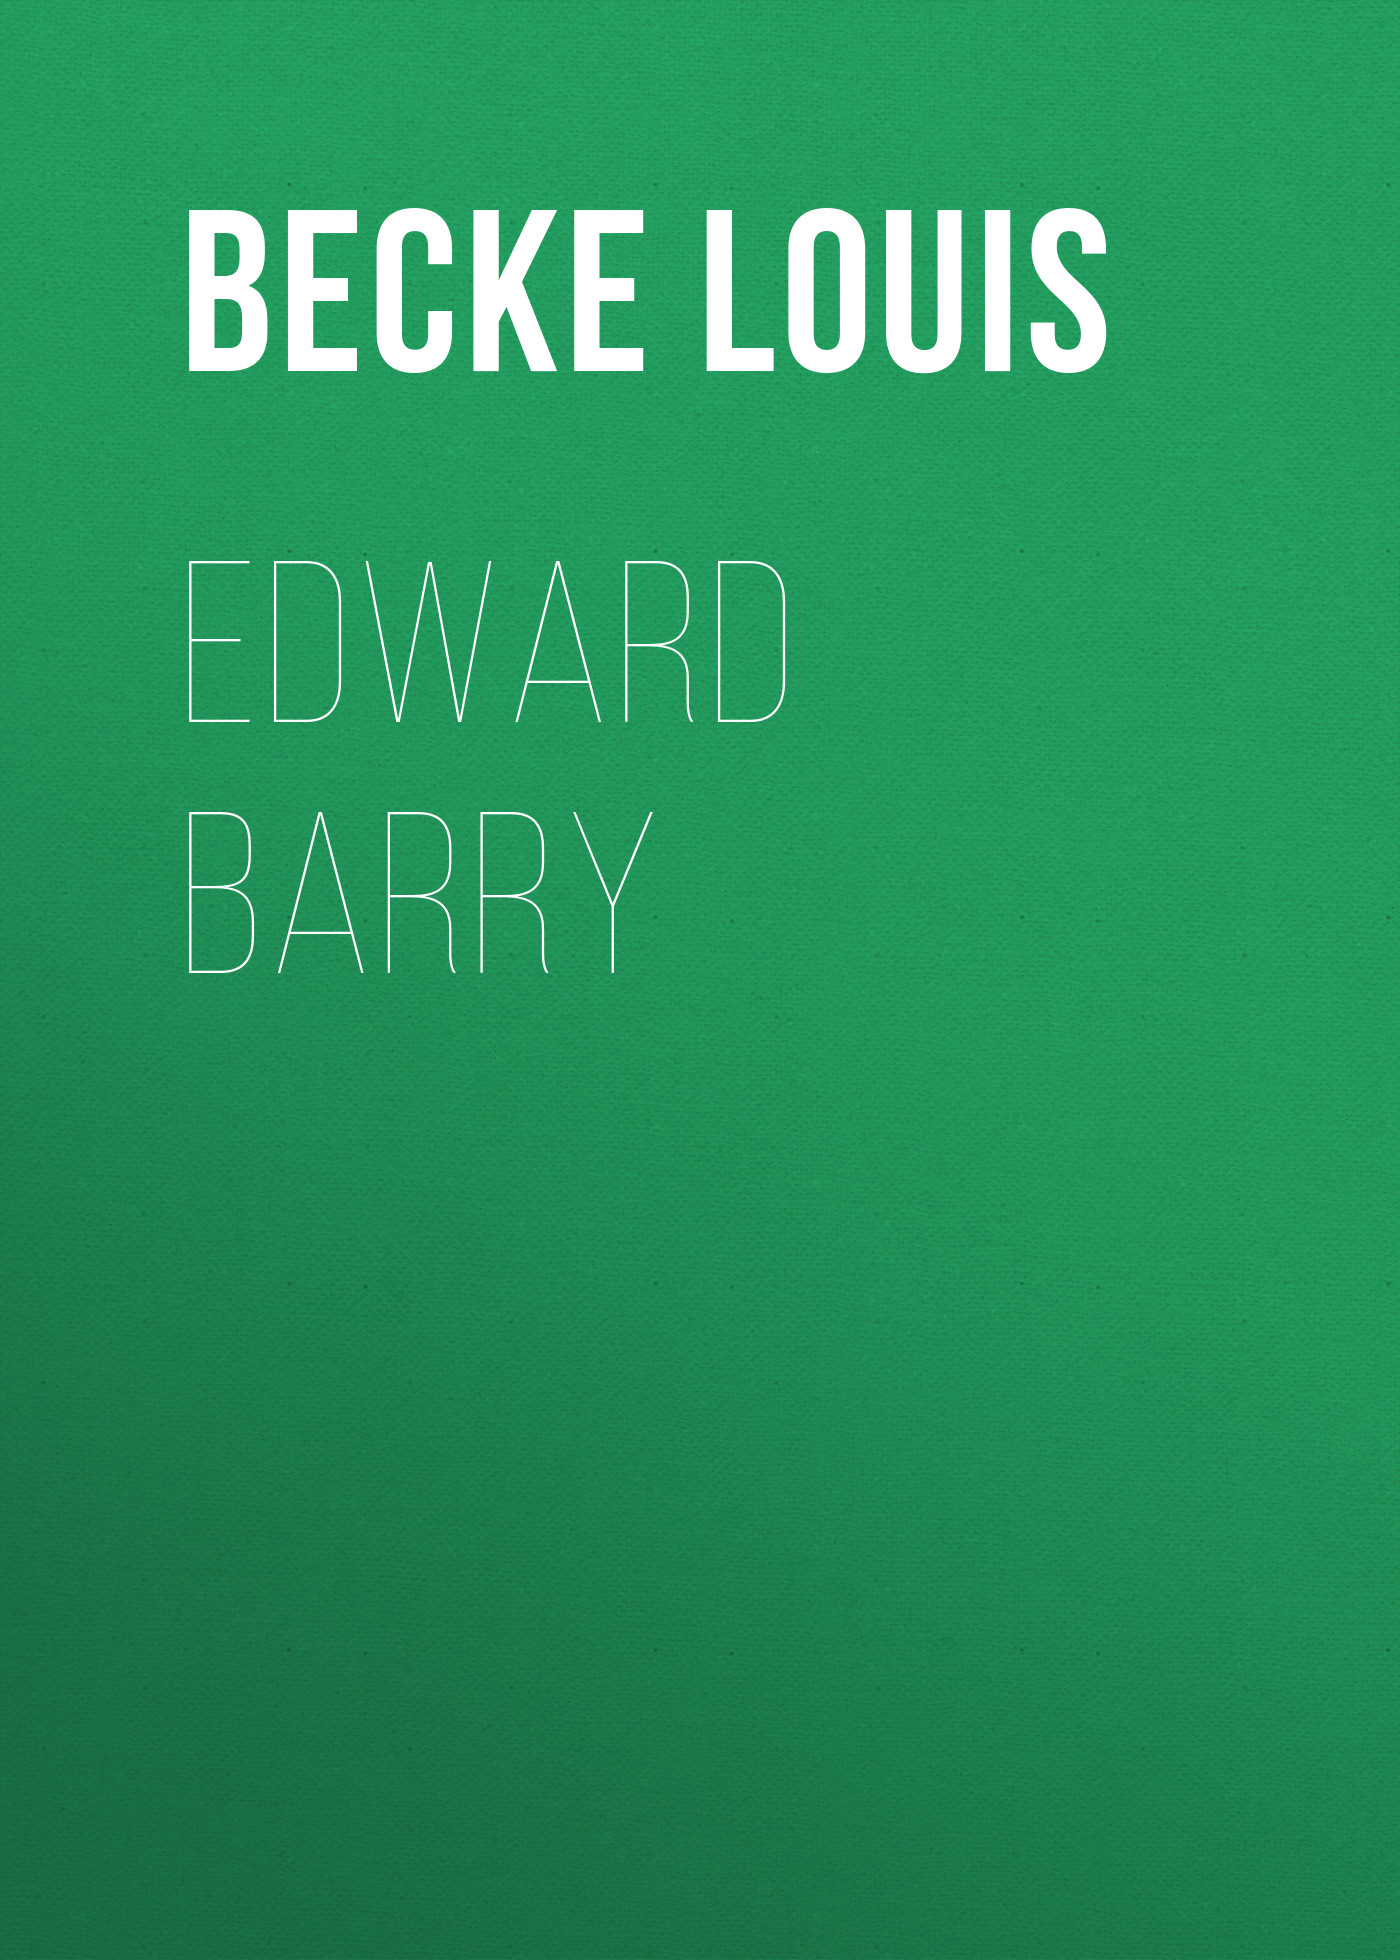 Книга Edward Barry из серии , созданная Louis Becke, может относится к жанру Зарубежная классика, Литература 19 века, Зарубежная старинная литература. Стоимость электронной книги Edward Barry с идентификатором 36365566 составляет 0 руб.